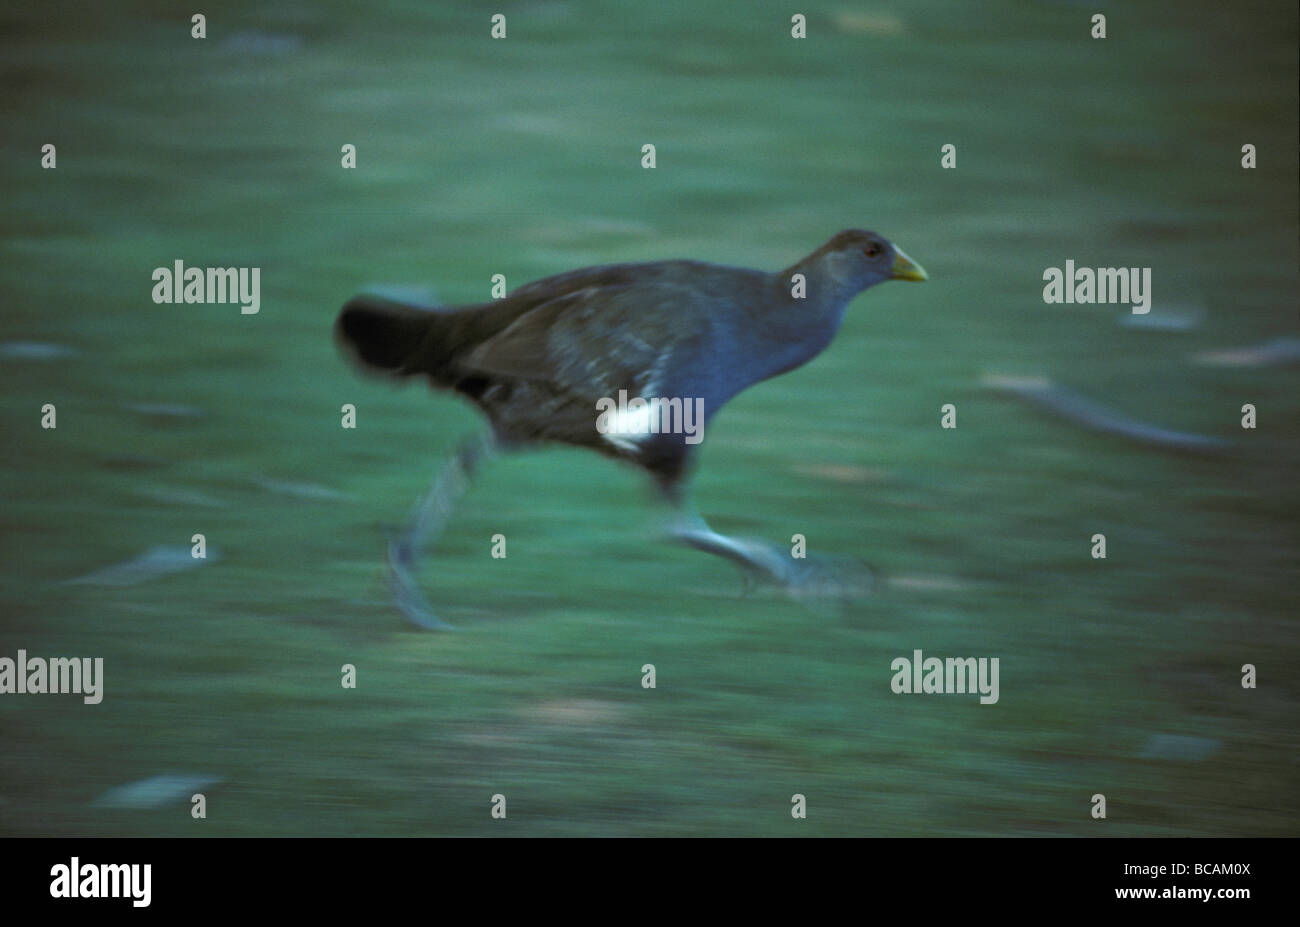 A fleeing Tasmanian Native Hen running through river grasslands. Stock Photo